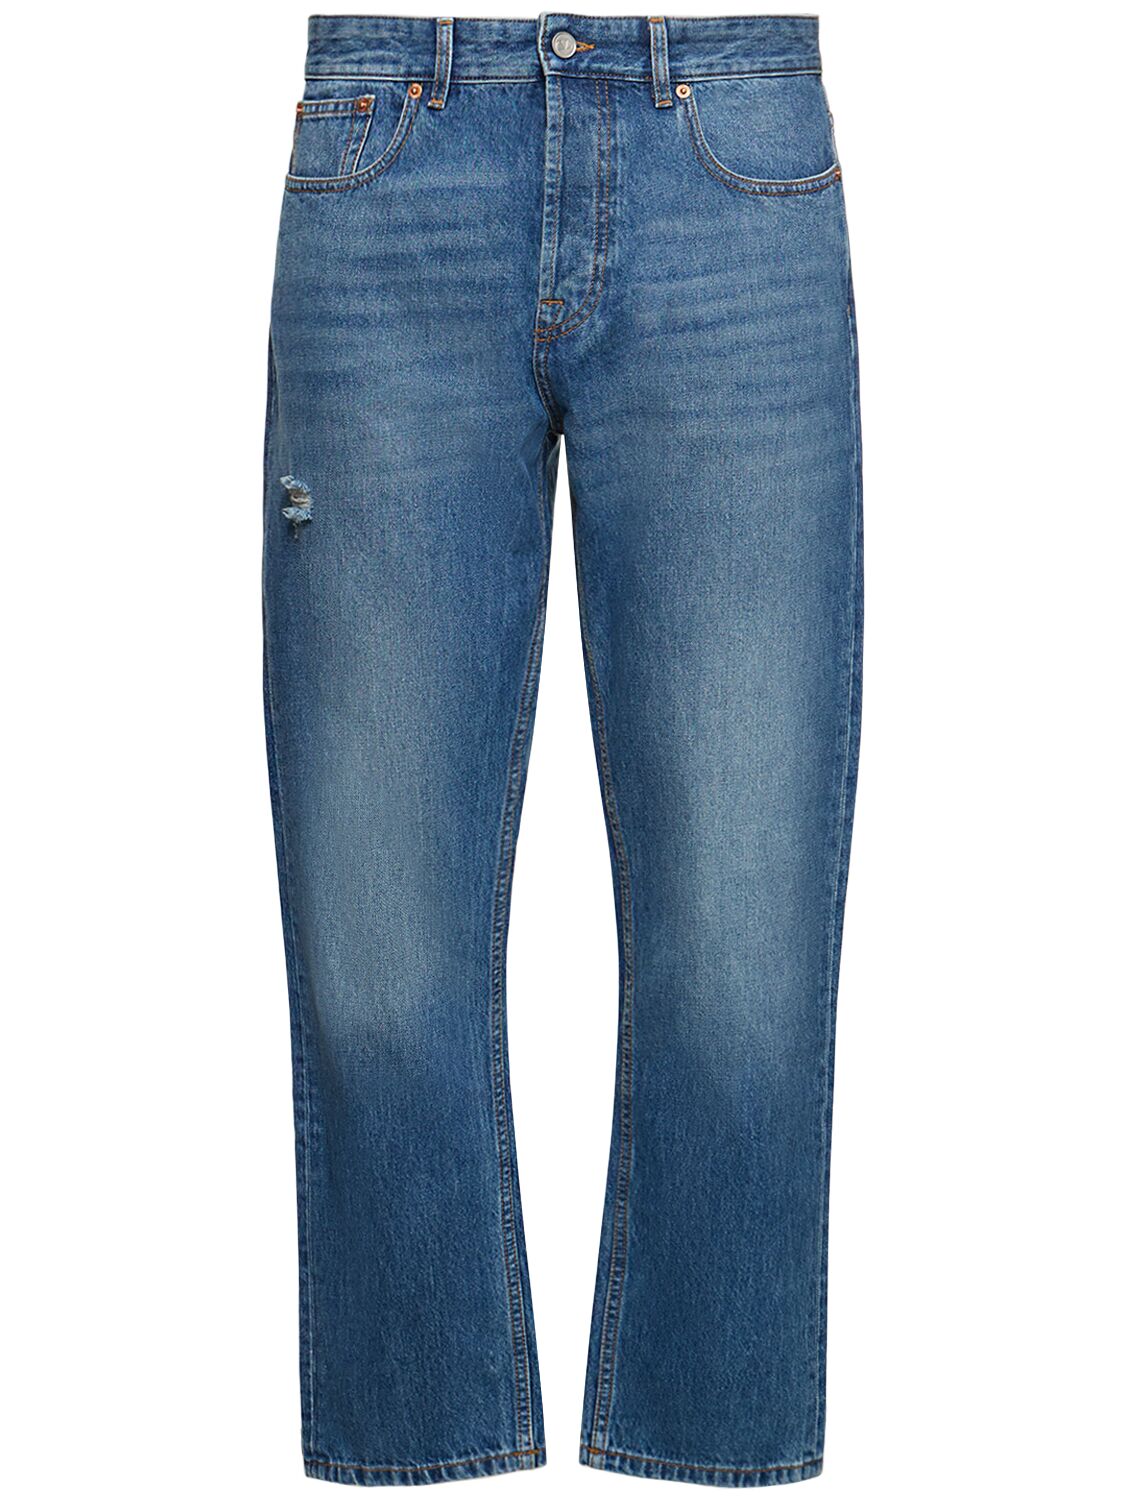 Image of Cotton Denim Regular Fit Jeans